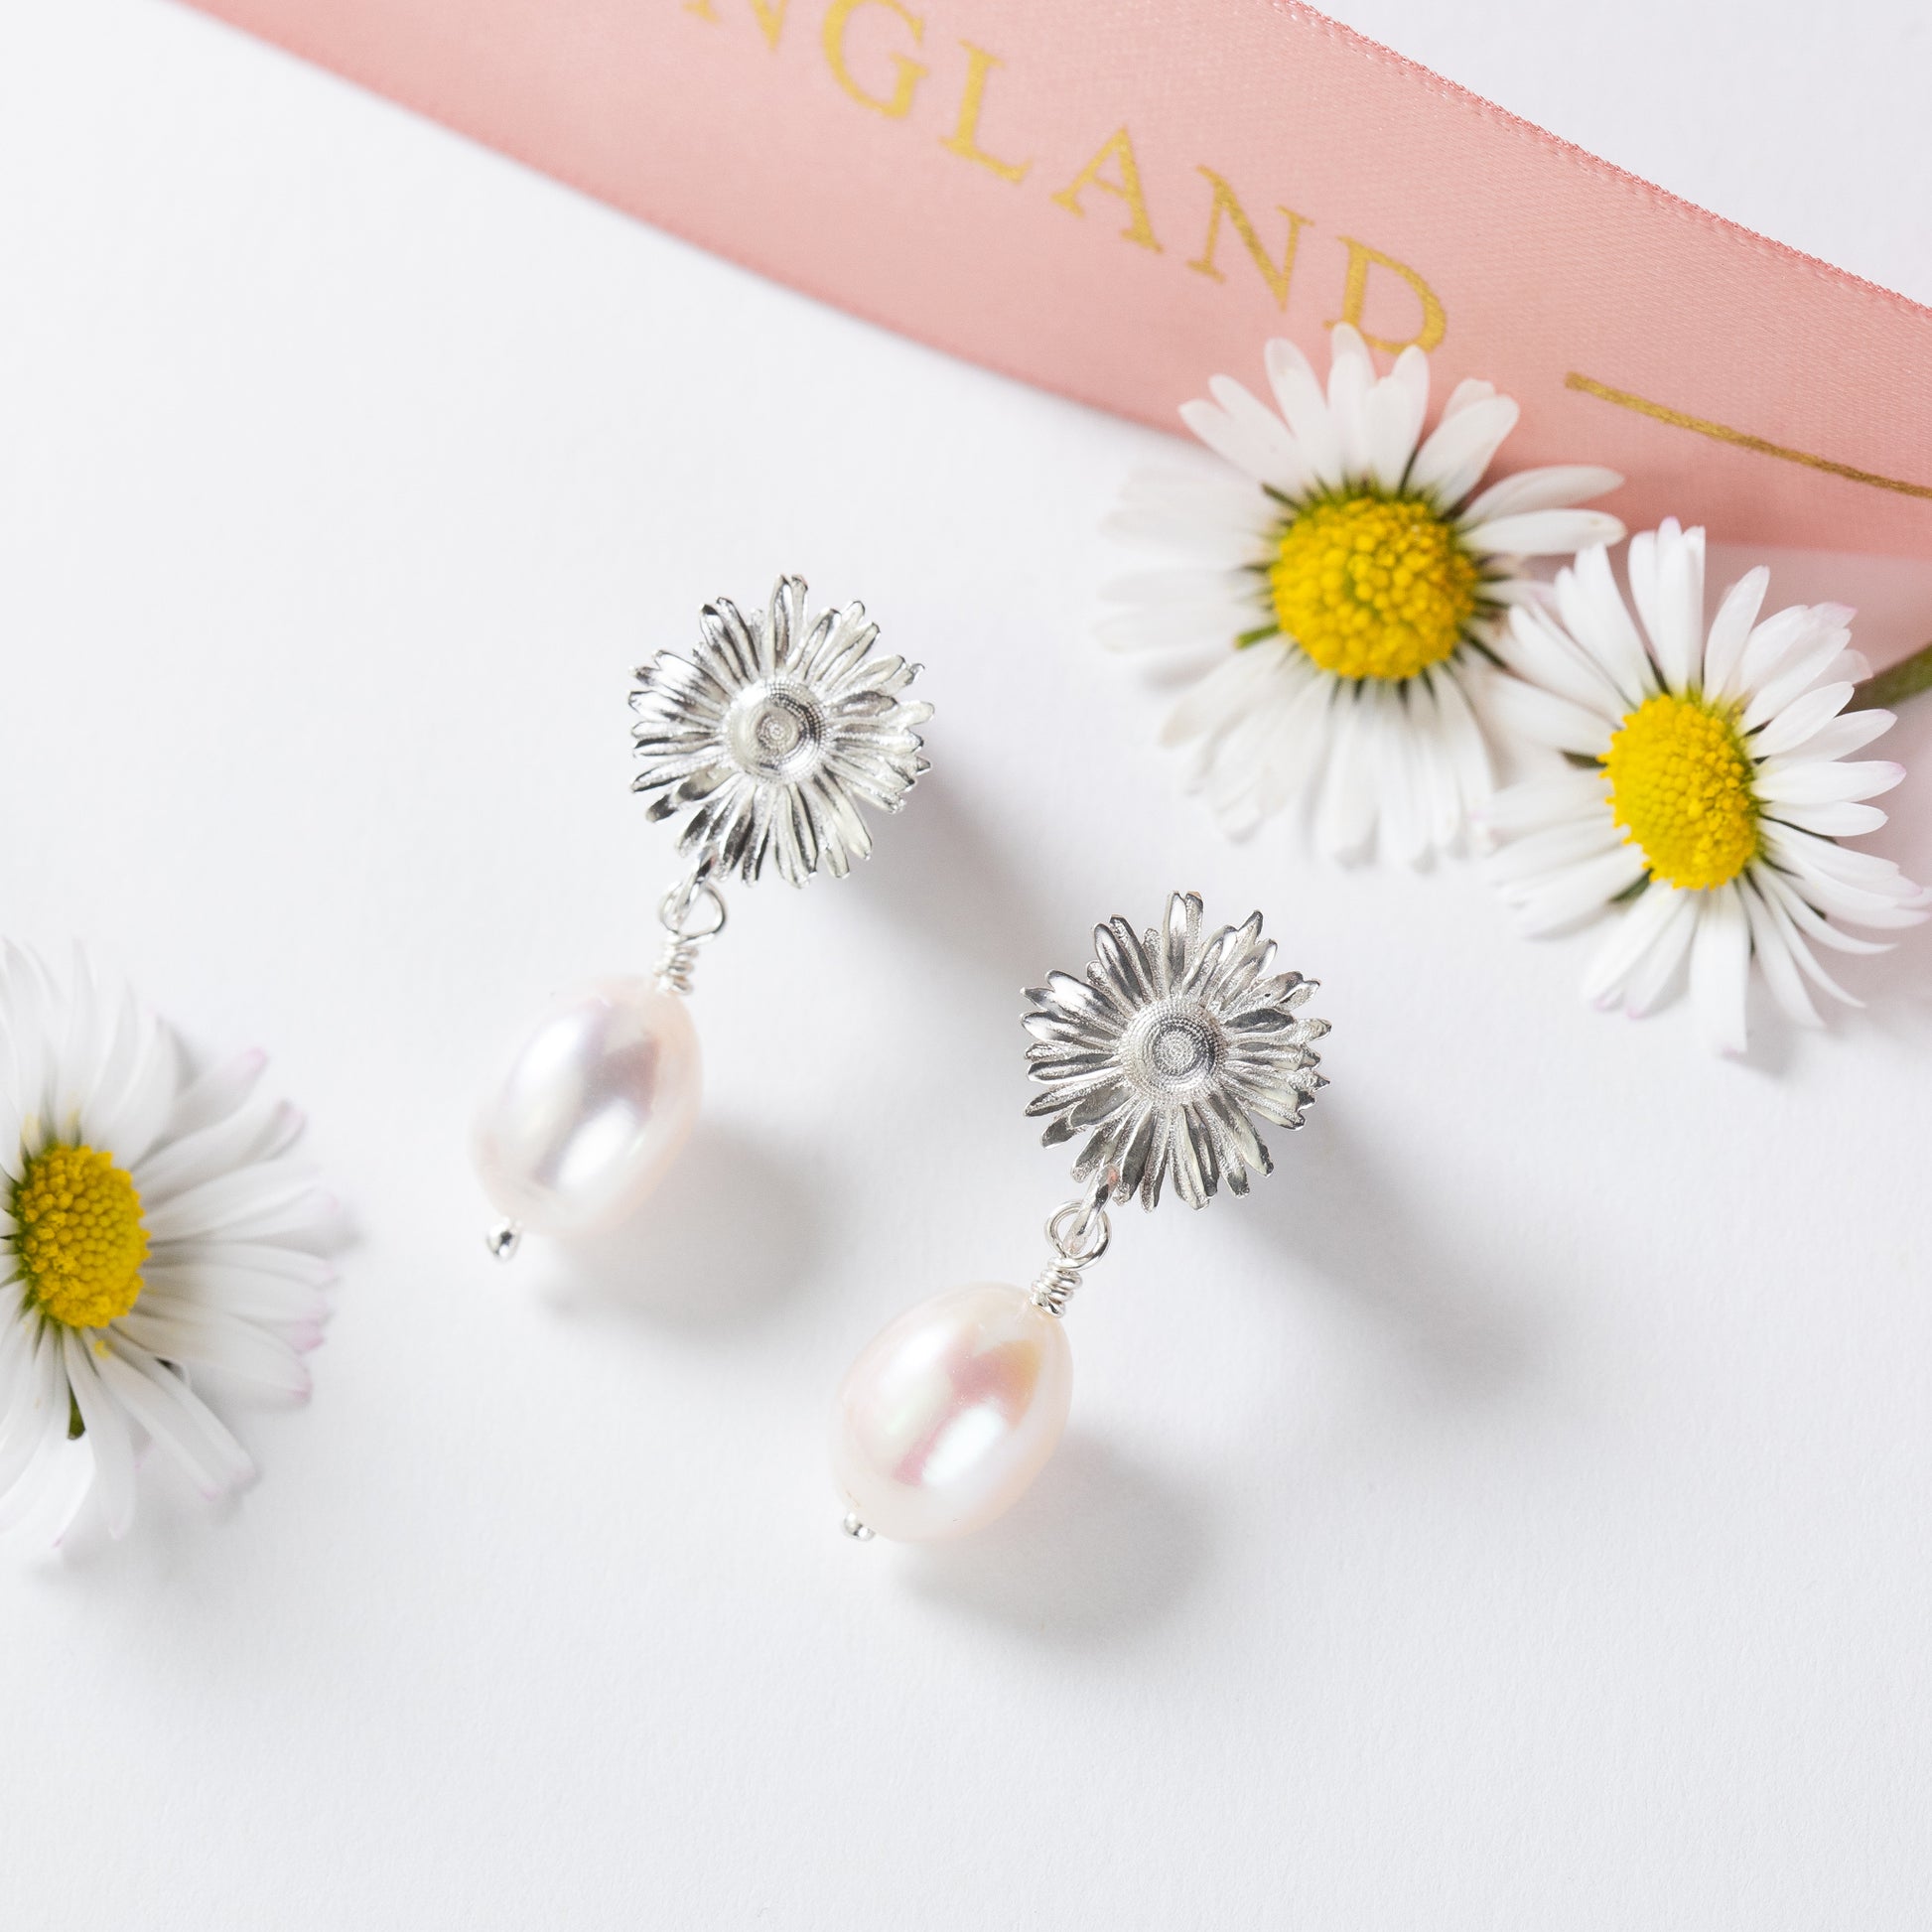 Daisy Flower Earrings - Hope - Silver & Pearl